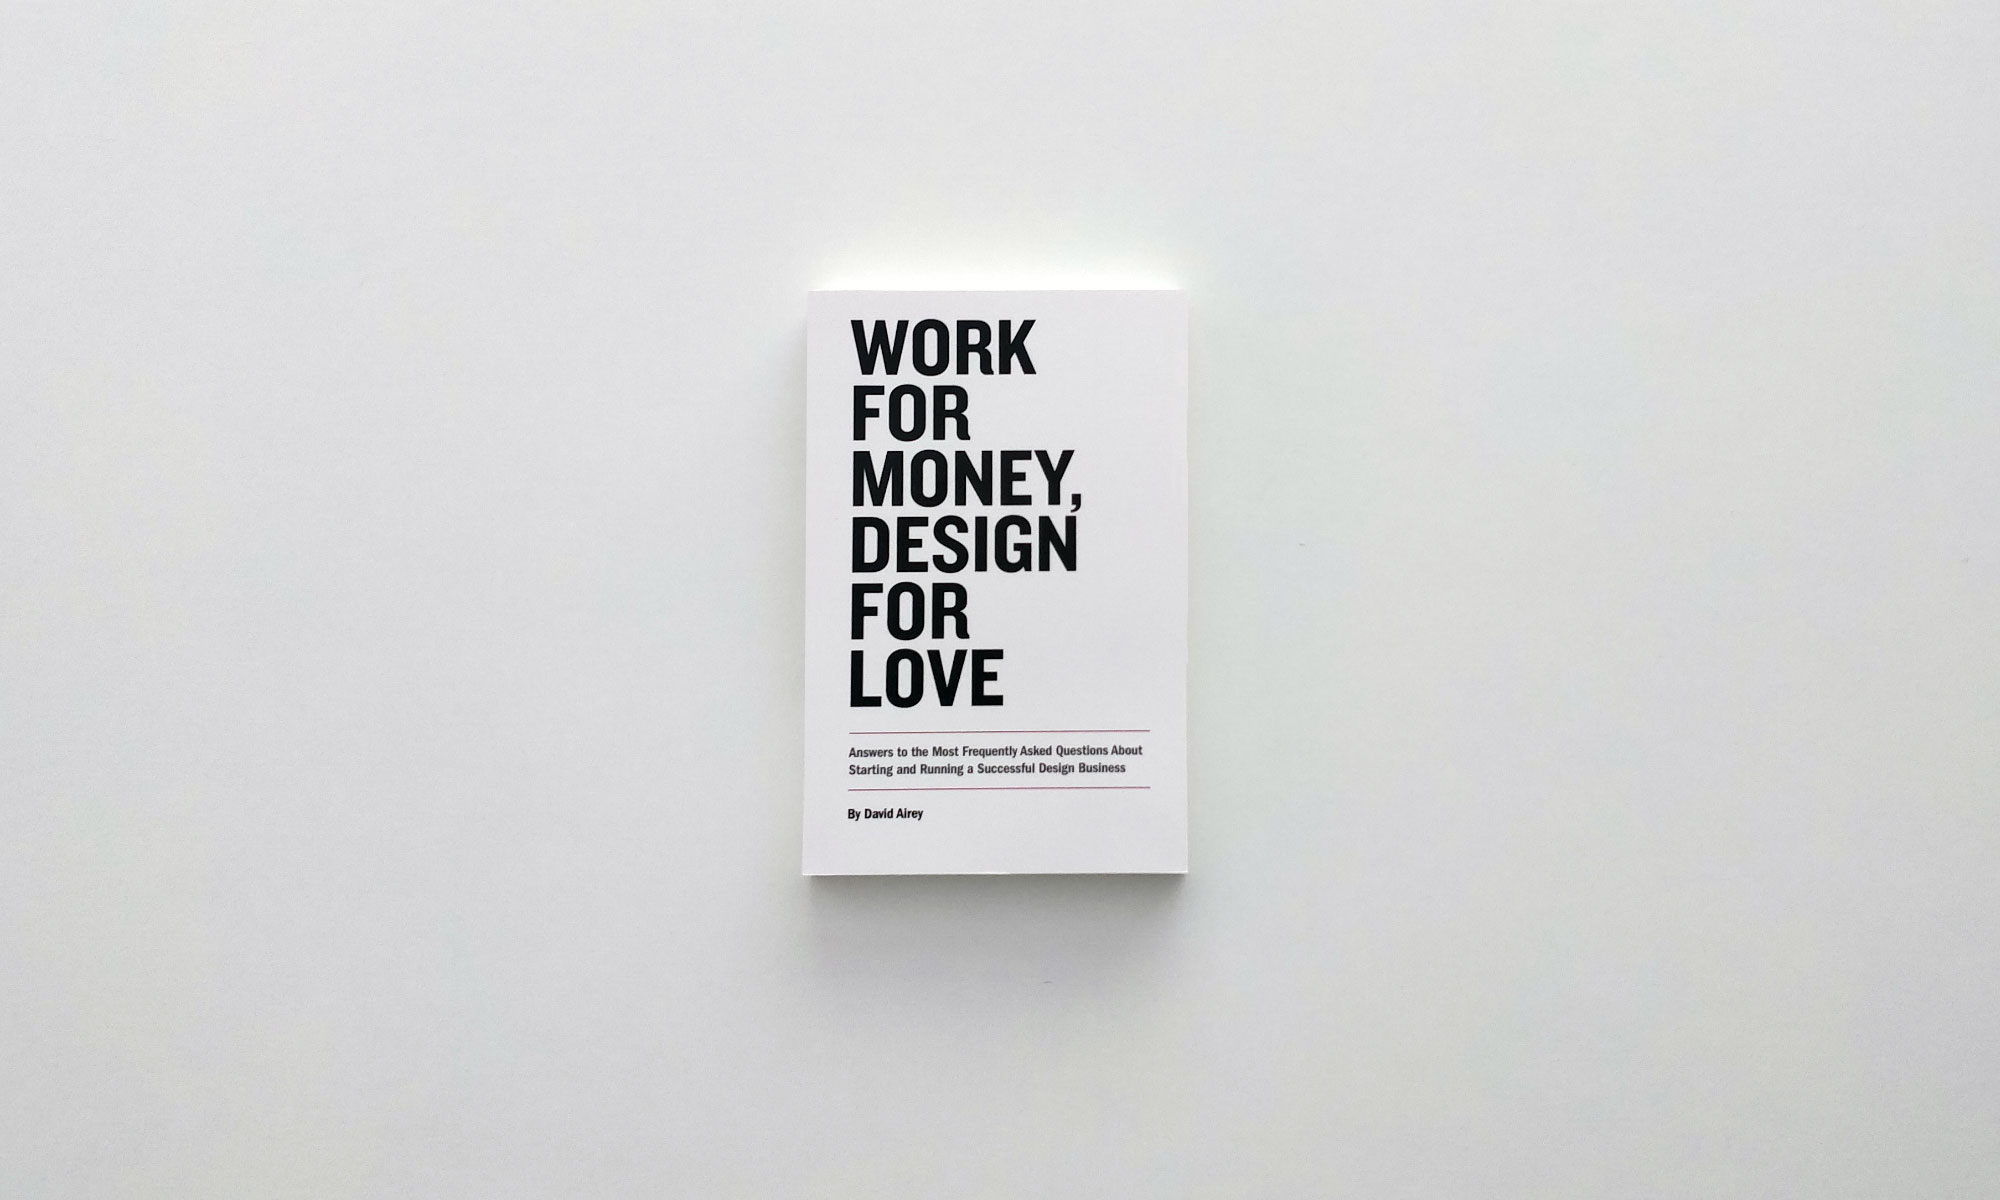 Work for Money, Design for Love